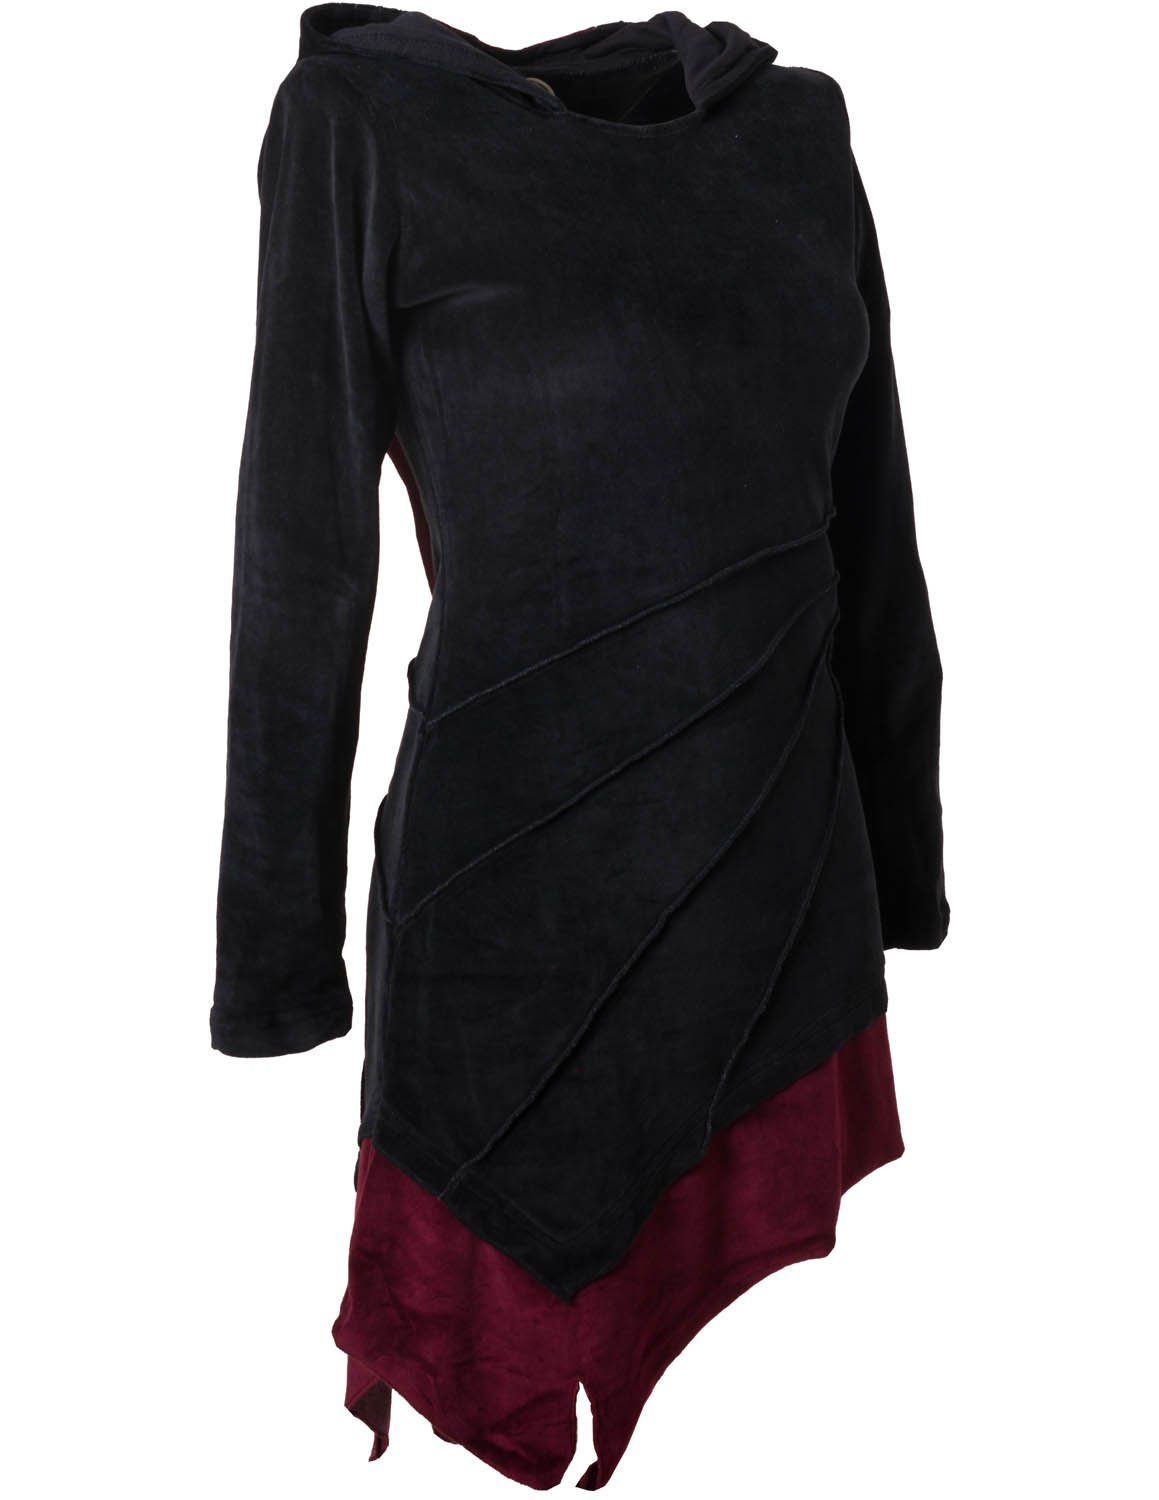 m. Vishes Ethno Zipfelkleid schwarz Gothik, Elfenkleid Hippie, Zipfelkapuze Style Asymmetrisches aus Samt